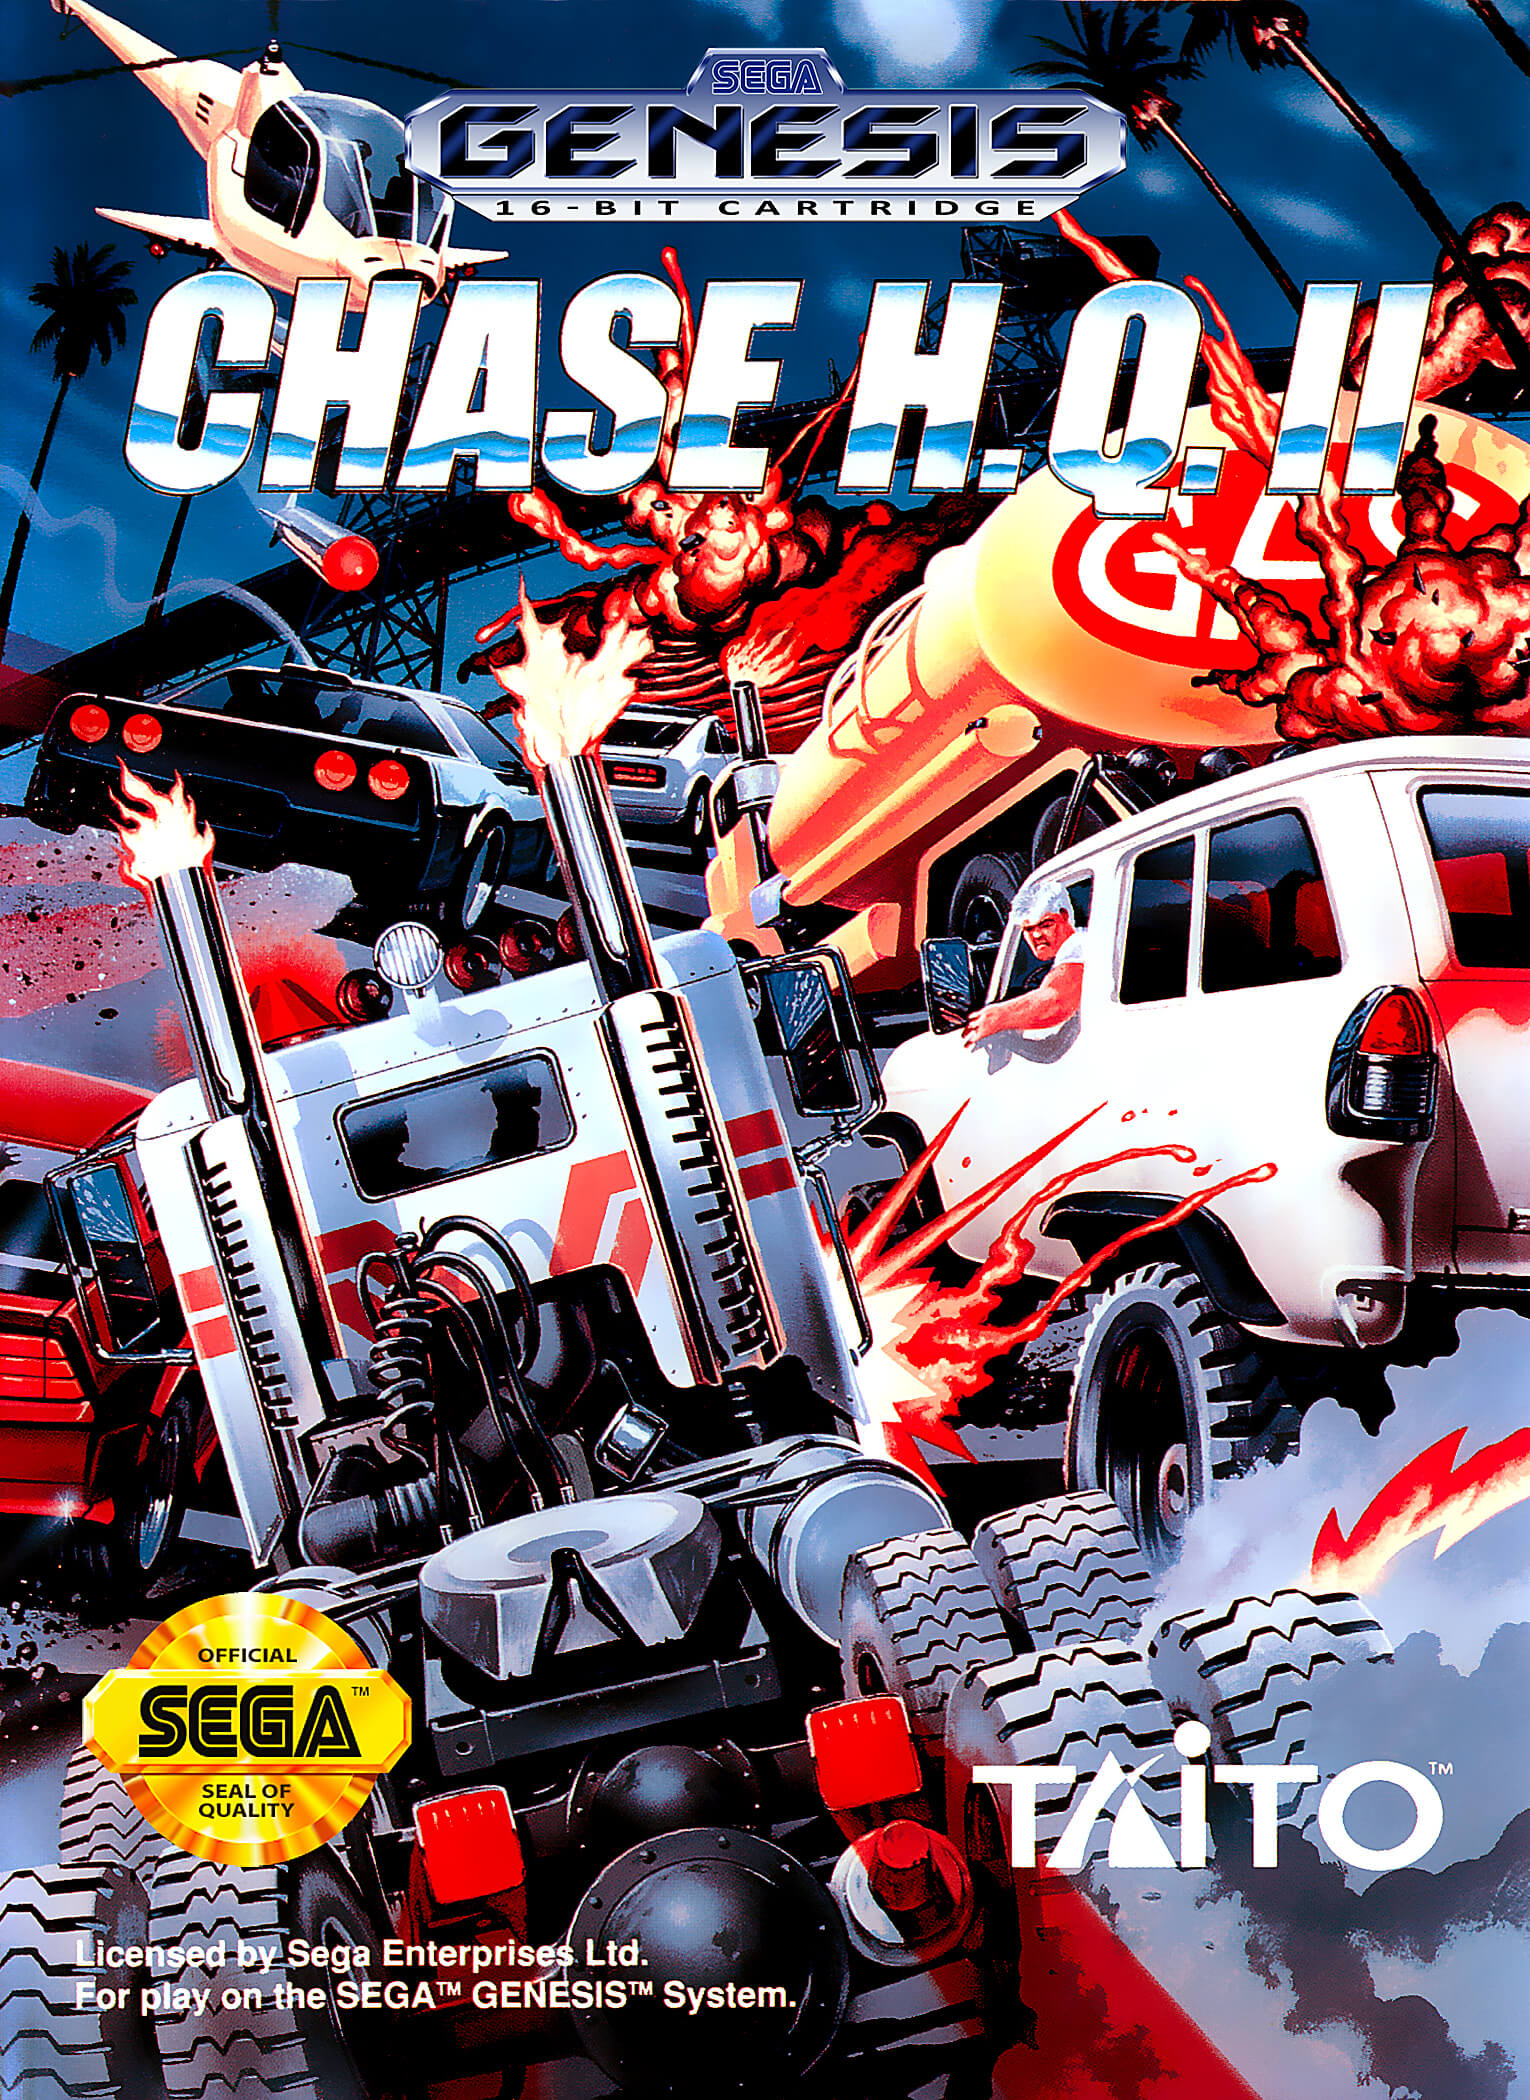 Chase H.Q. II